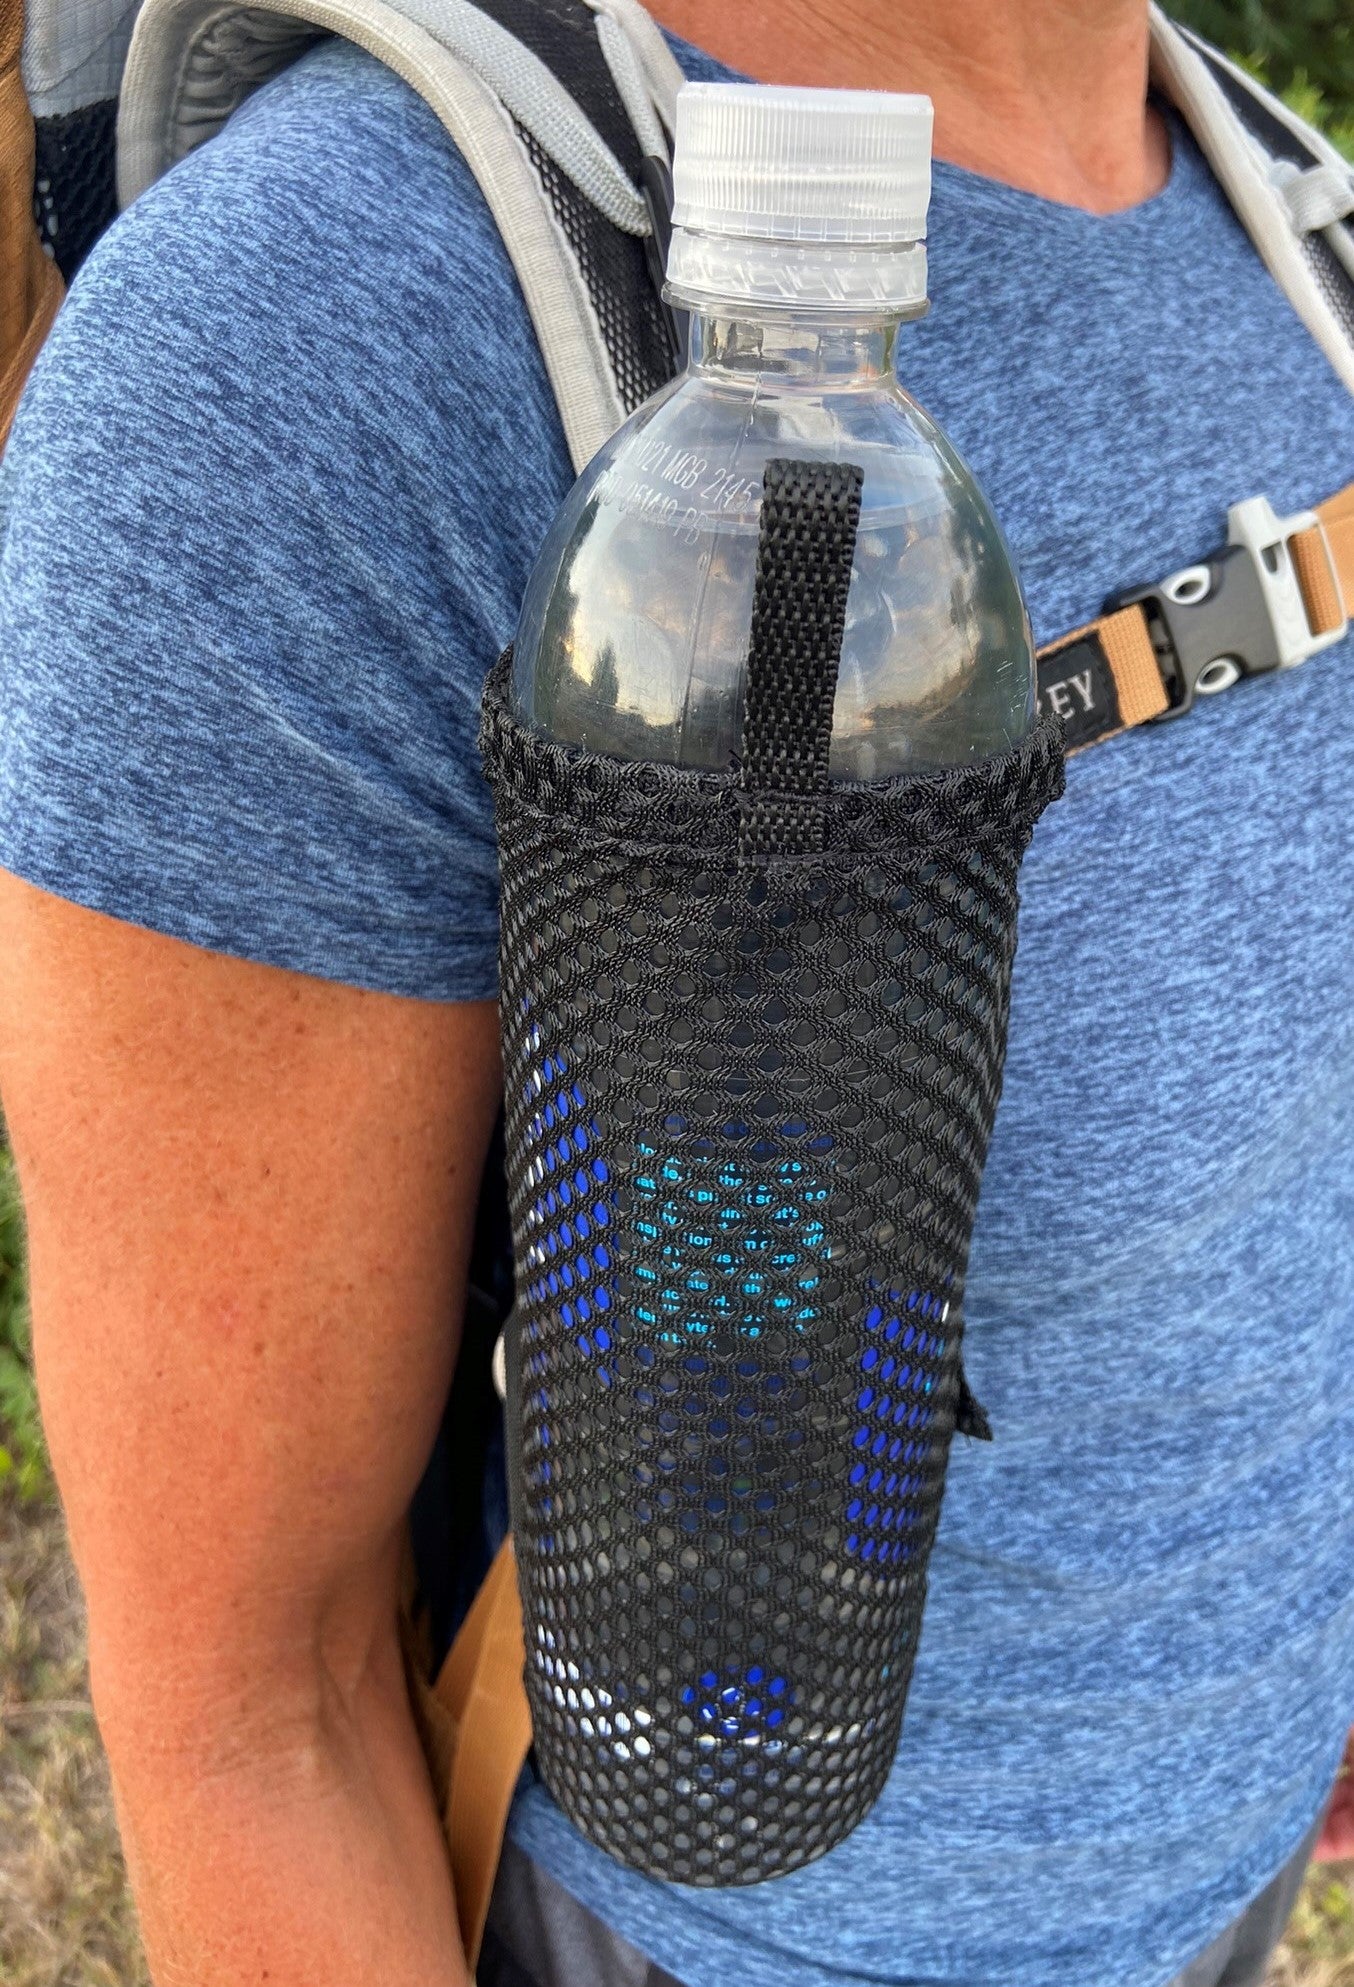 Mountain Mike Hiking Gear Backpack Shoulder Strap Water Bottle Holder…